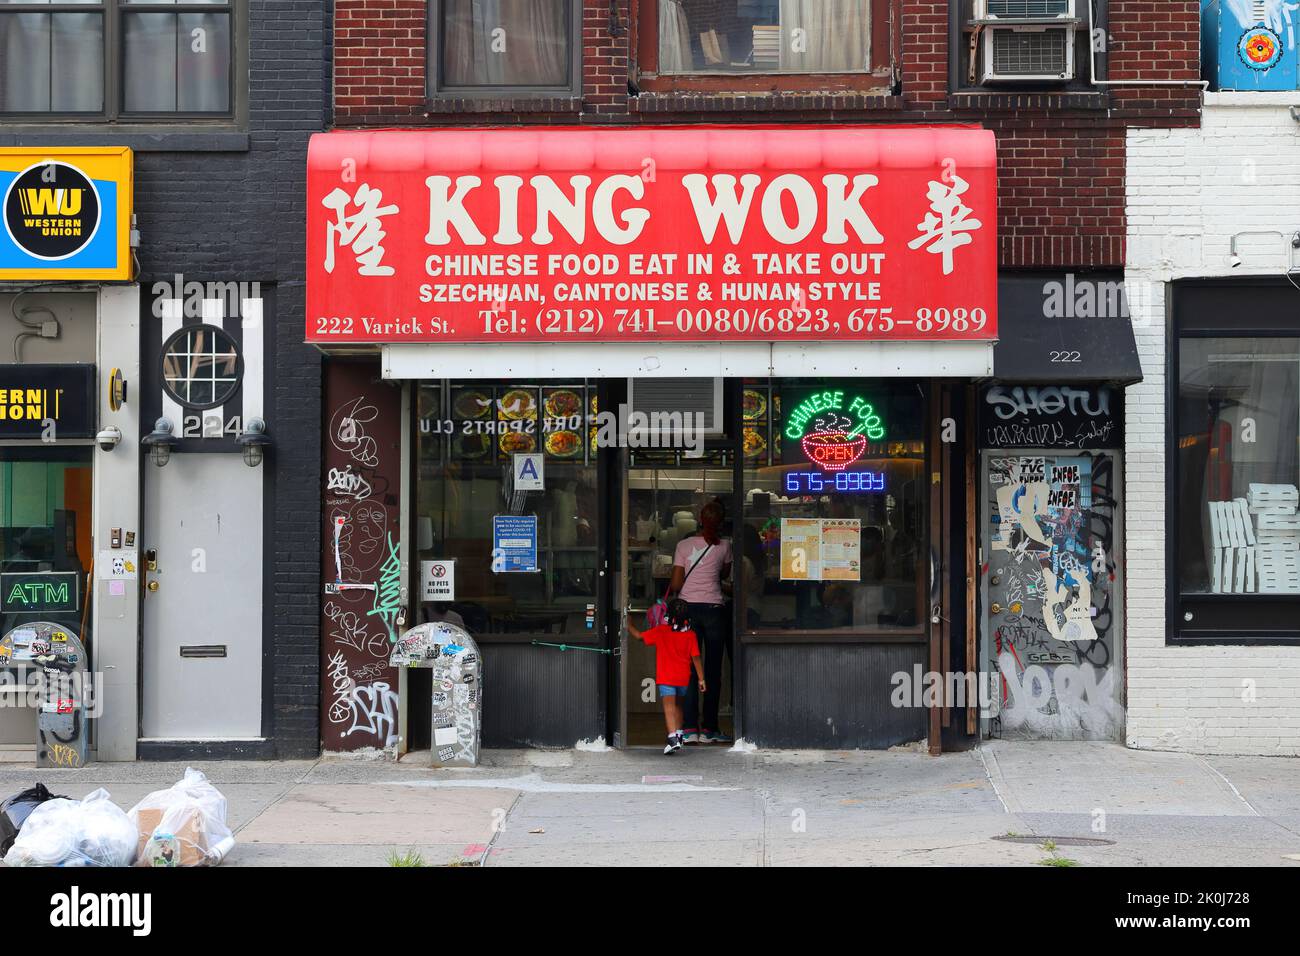 King Wok, 222 Varick St, New York, NYC Foto von einem chinesischen Restaurant zum Mitnehmen in Manhattans West Village-Viertel. Stockfoto